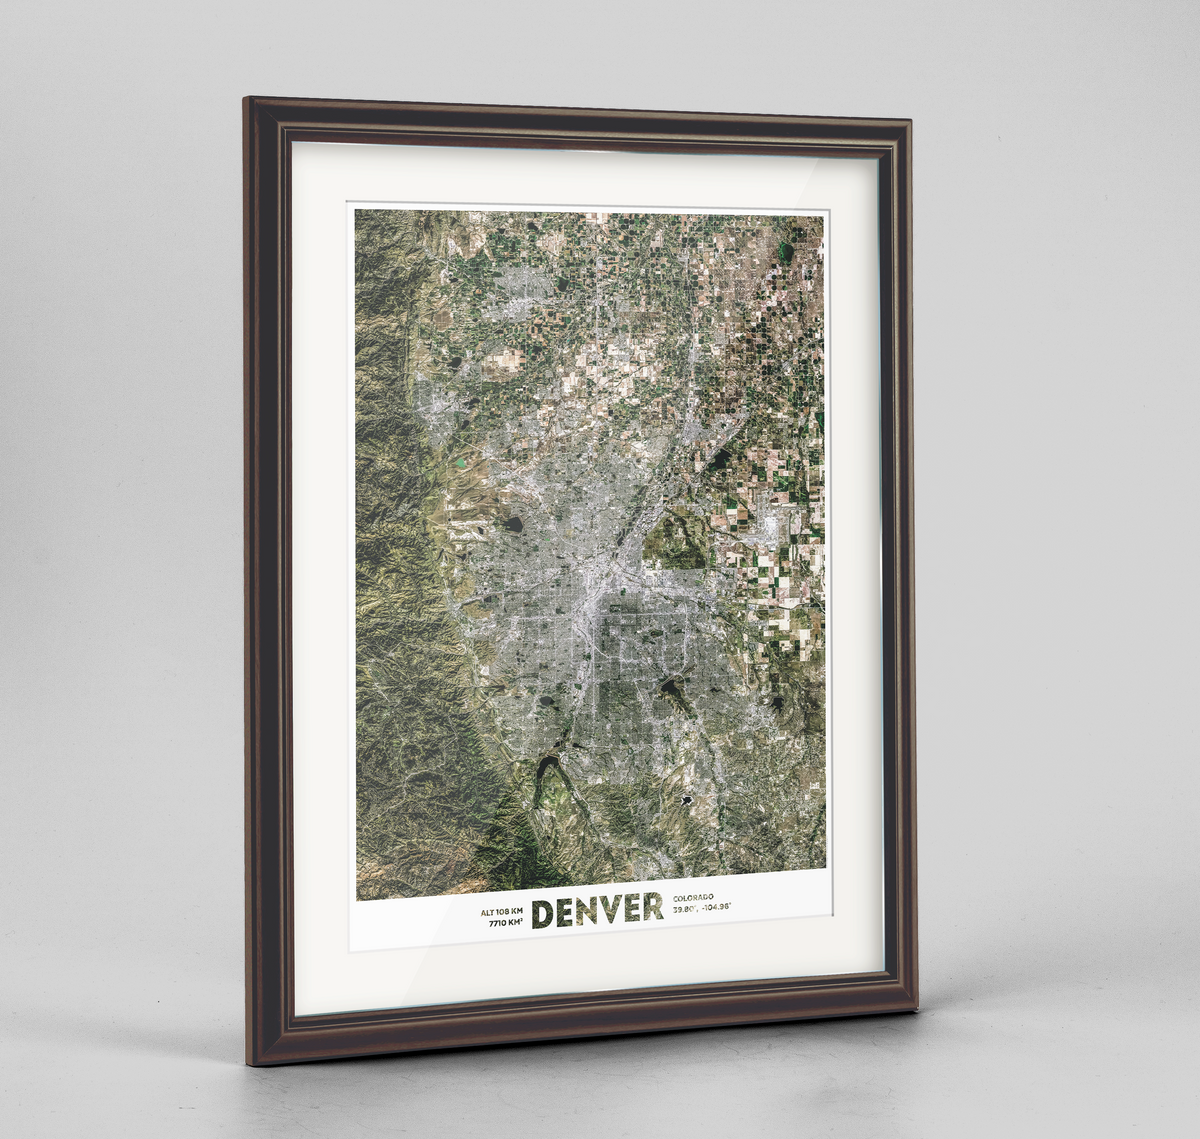 Denver Earth Photography Art Print - Framed